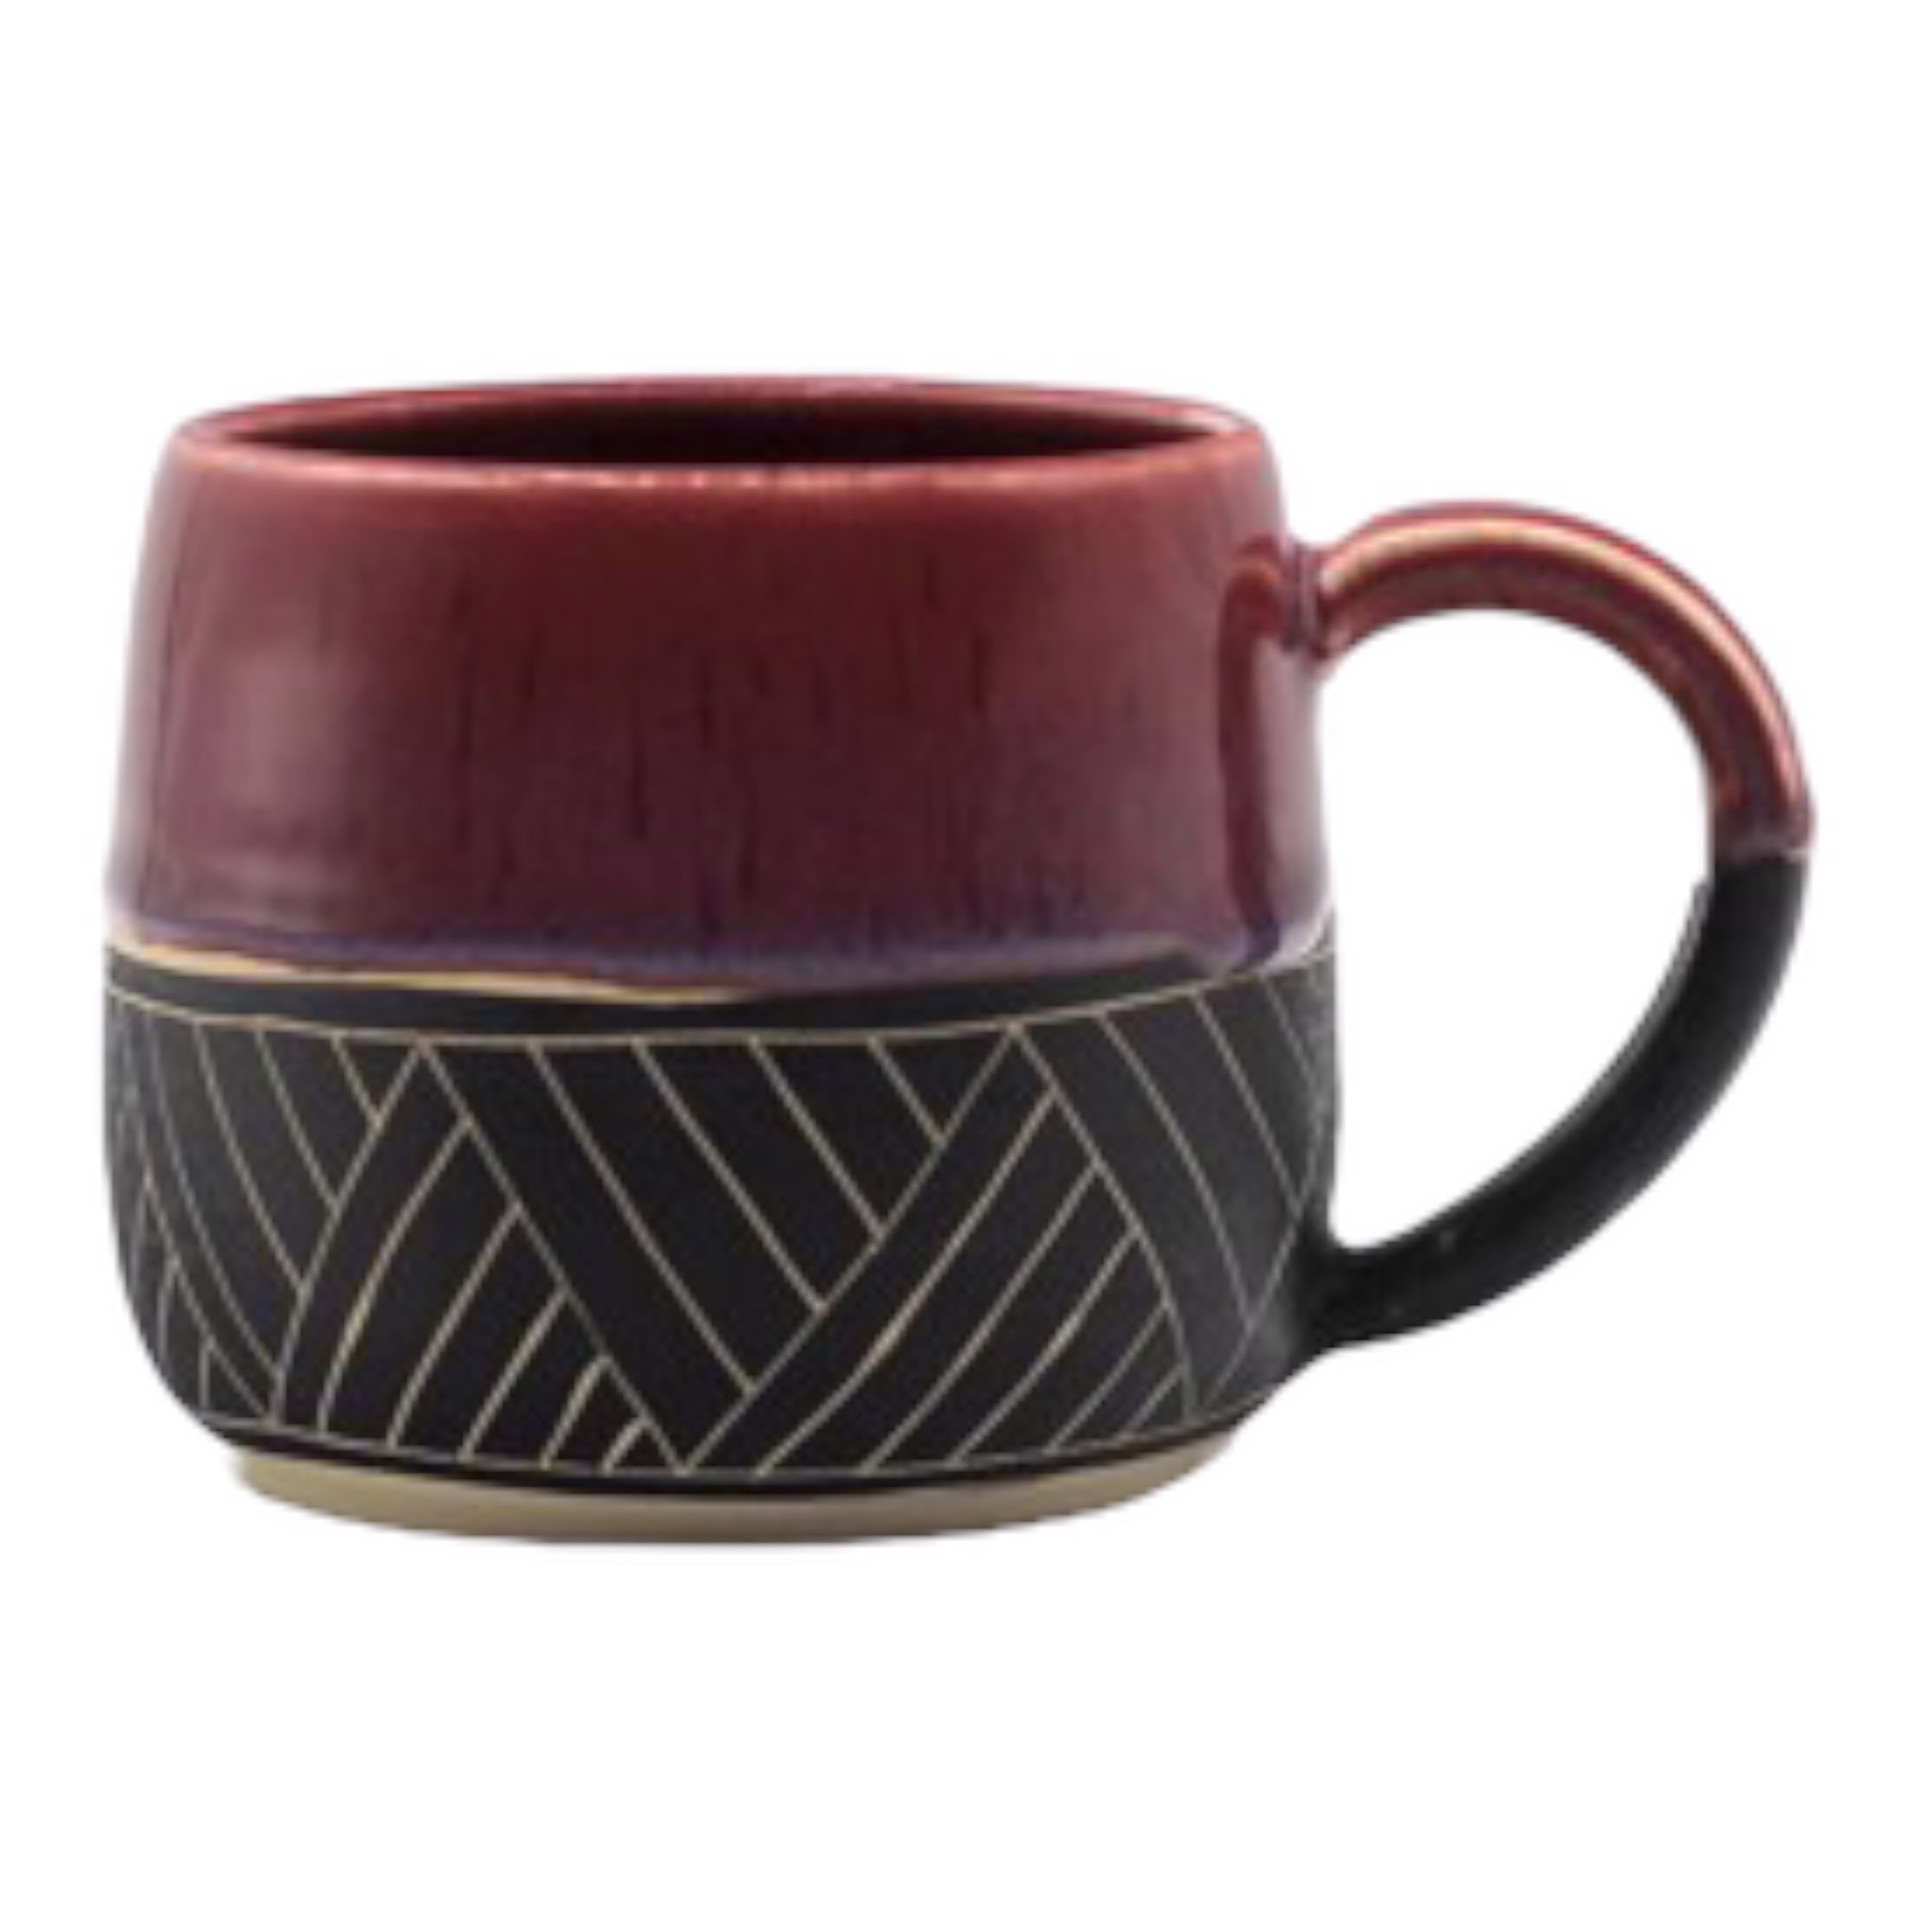 B&W Geometric w/ Cranberry Glaze Mug by Kara Lovell